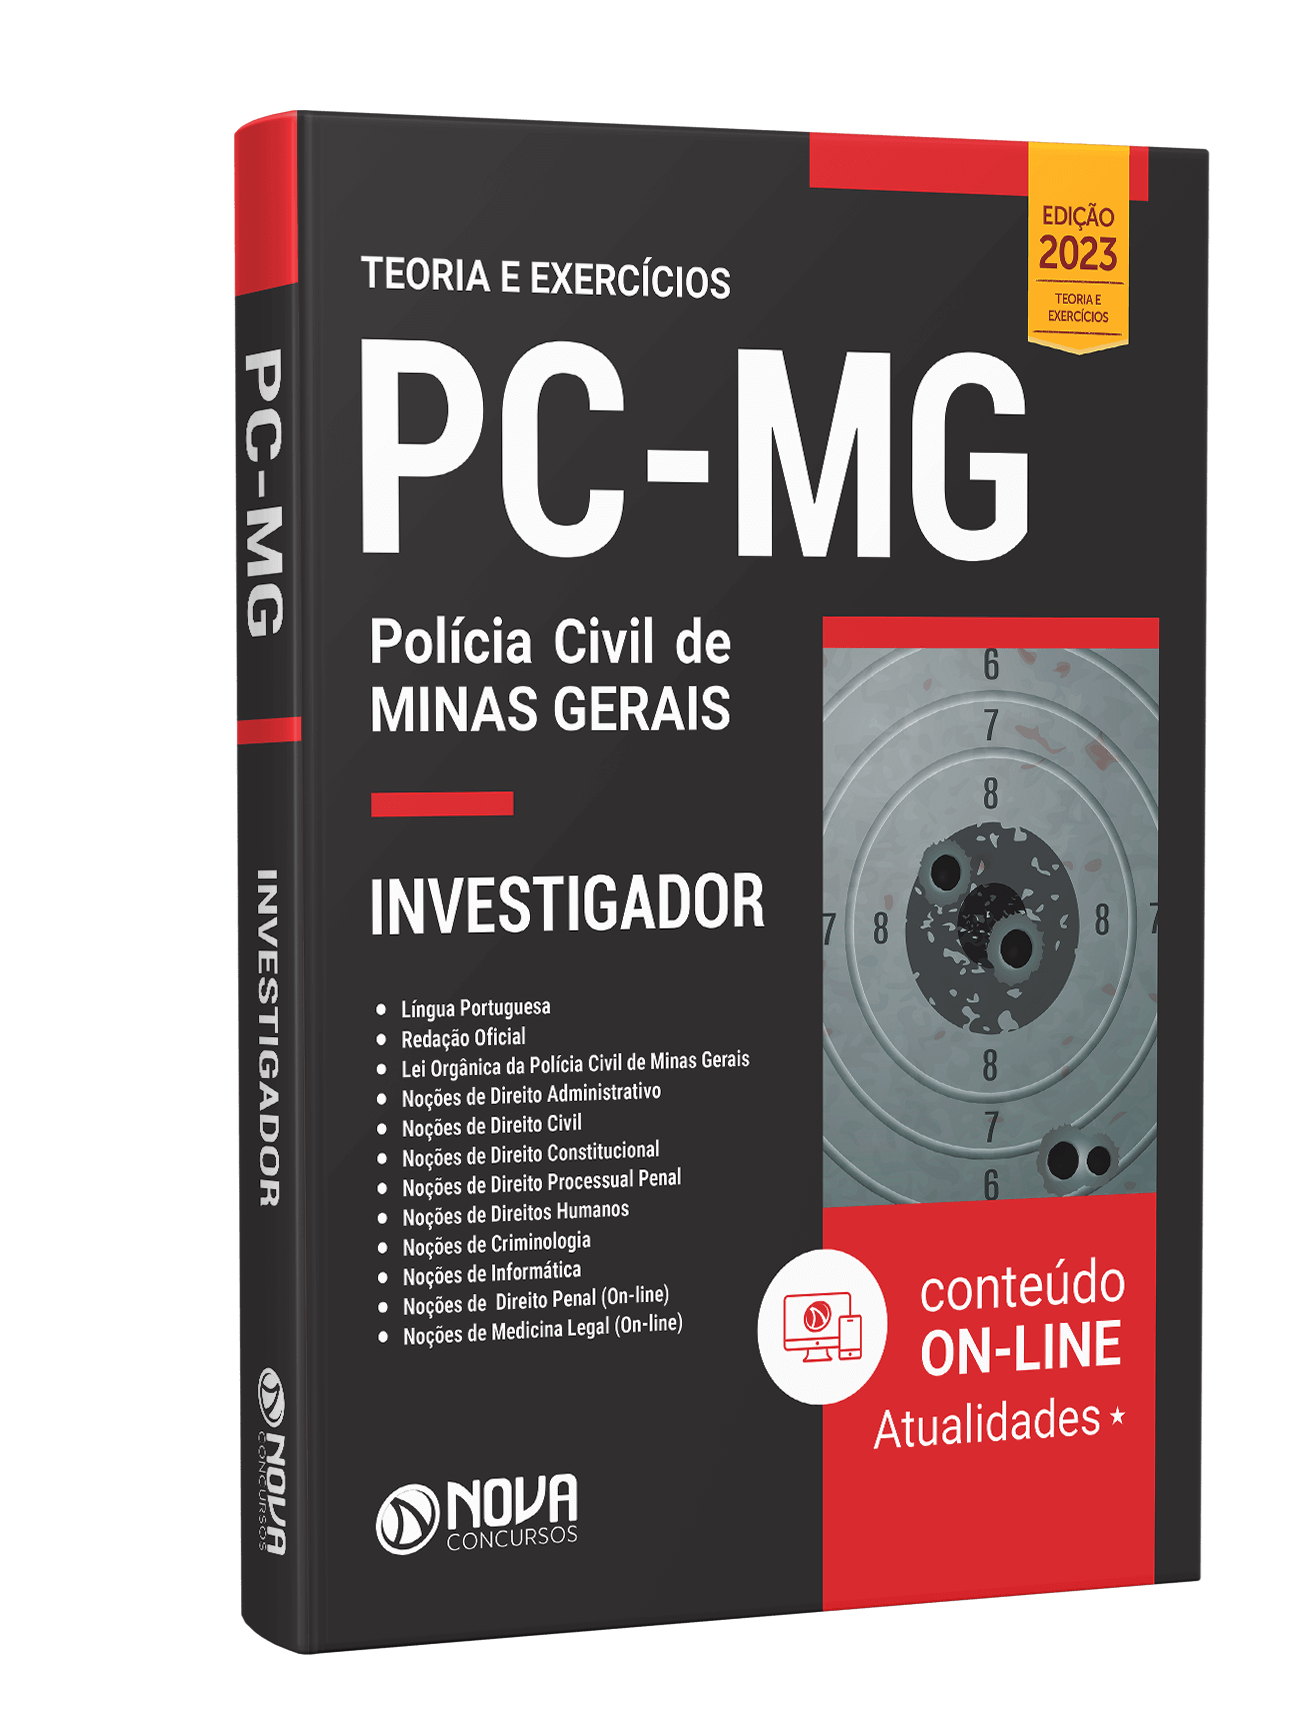 Concurso PCMG - Investigador / Escrivão - Português - Banca Fumarc 